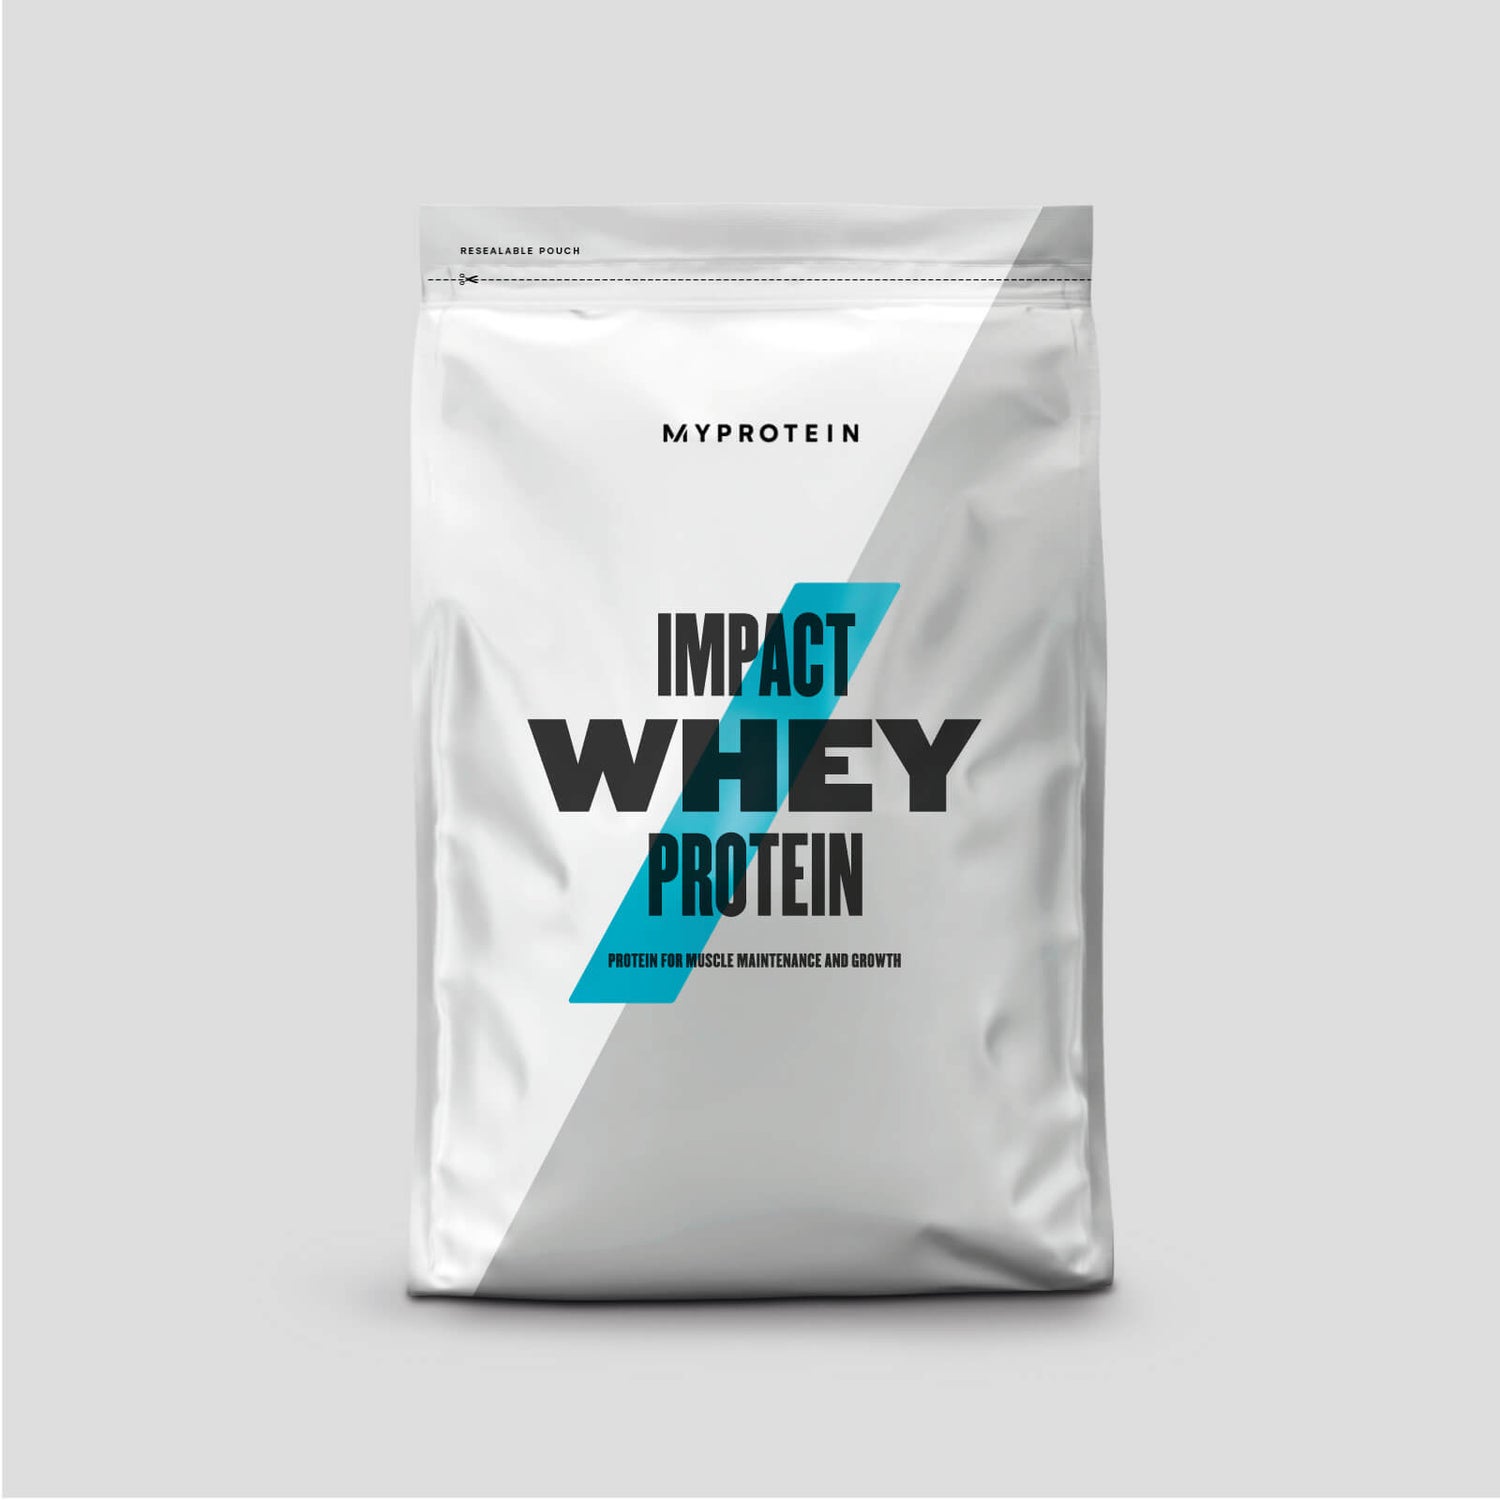 임팩트 웨이 프로틴 - 1kg - Cereal Milk